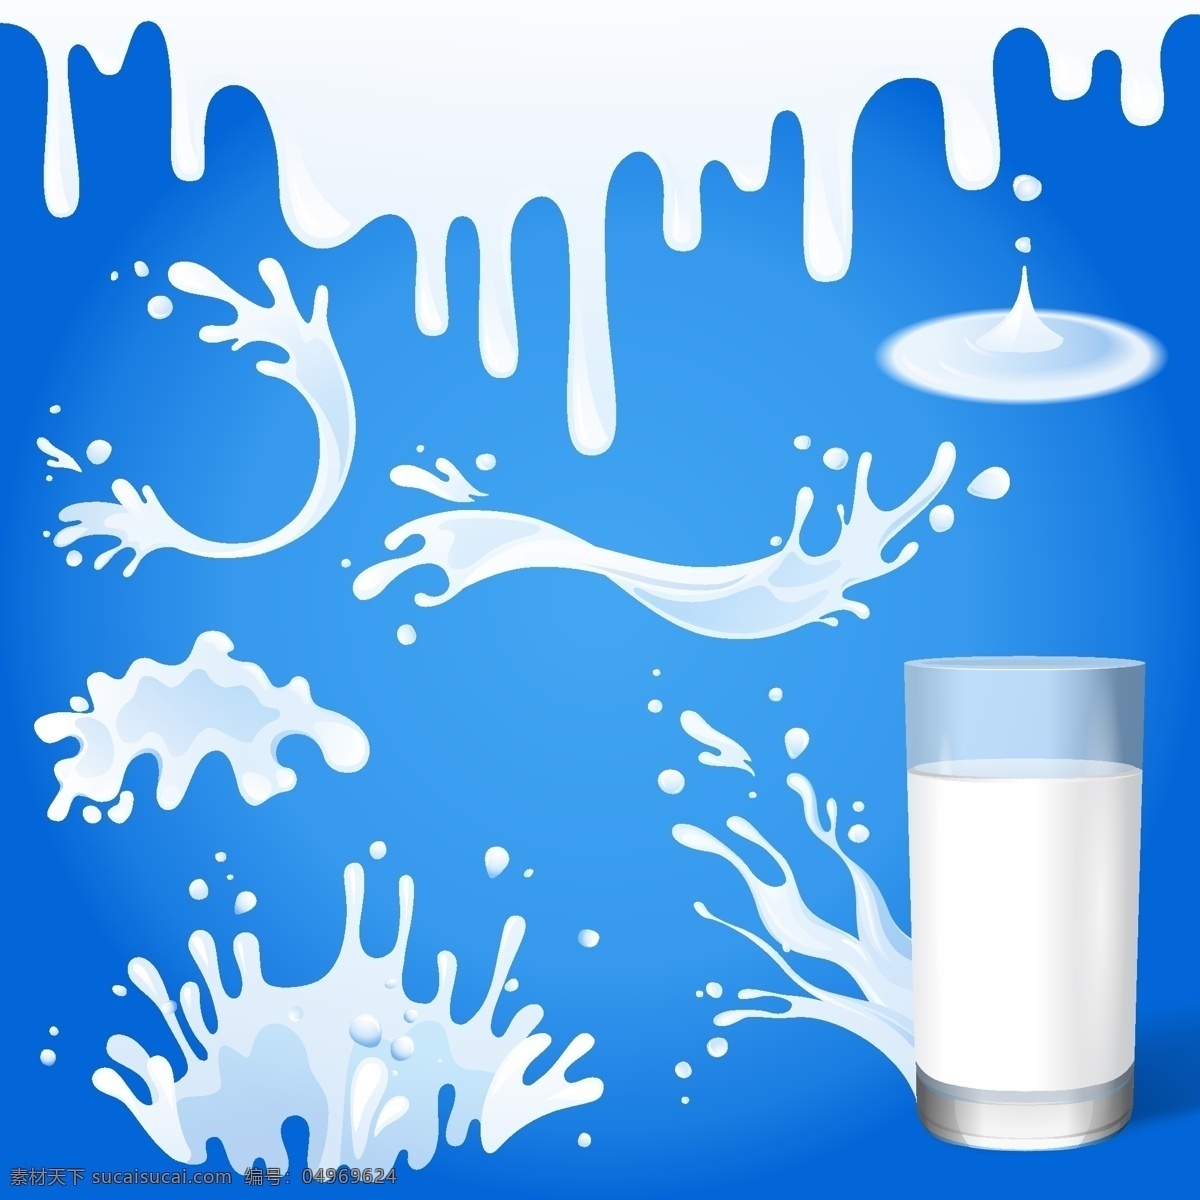 牛奶液体 牛奶 手绘 矢量 液体 杯子 水滴 水的各种形态 水 白色 生活百科 餐饮美食